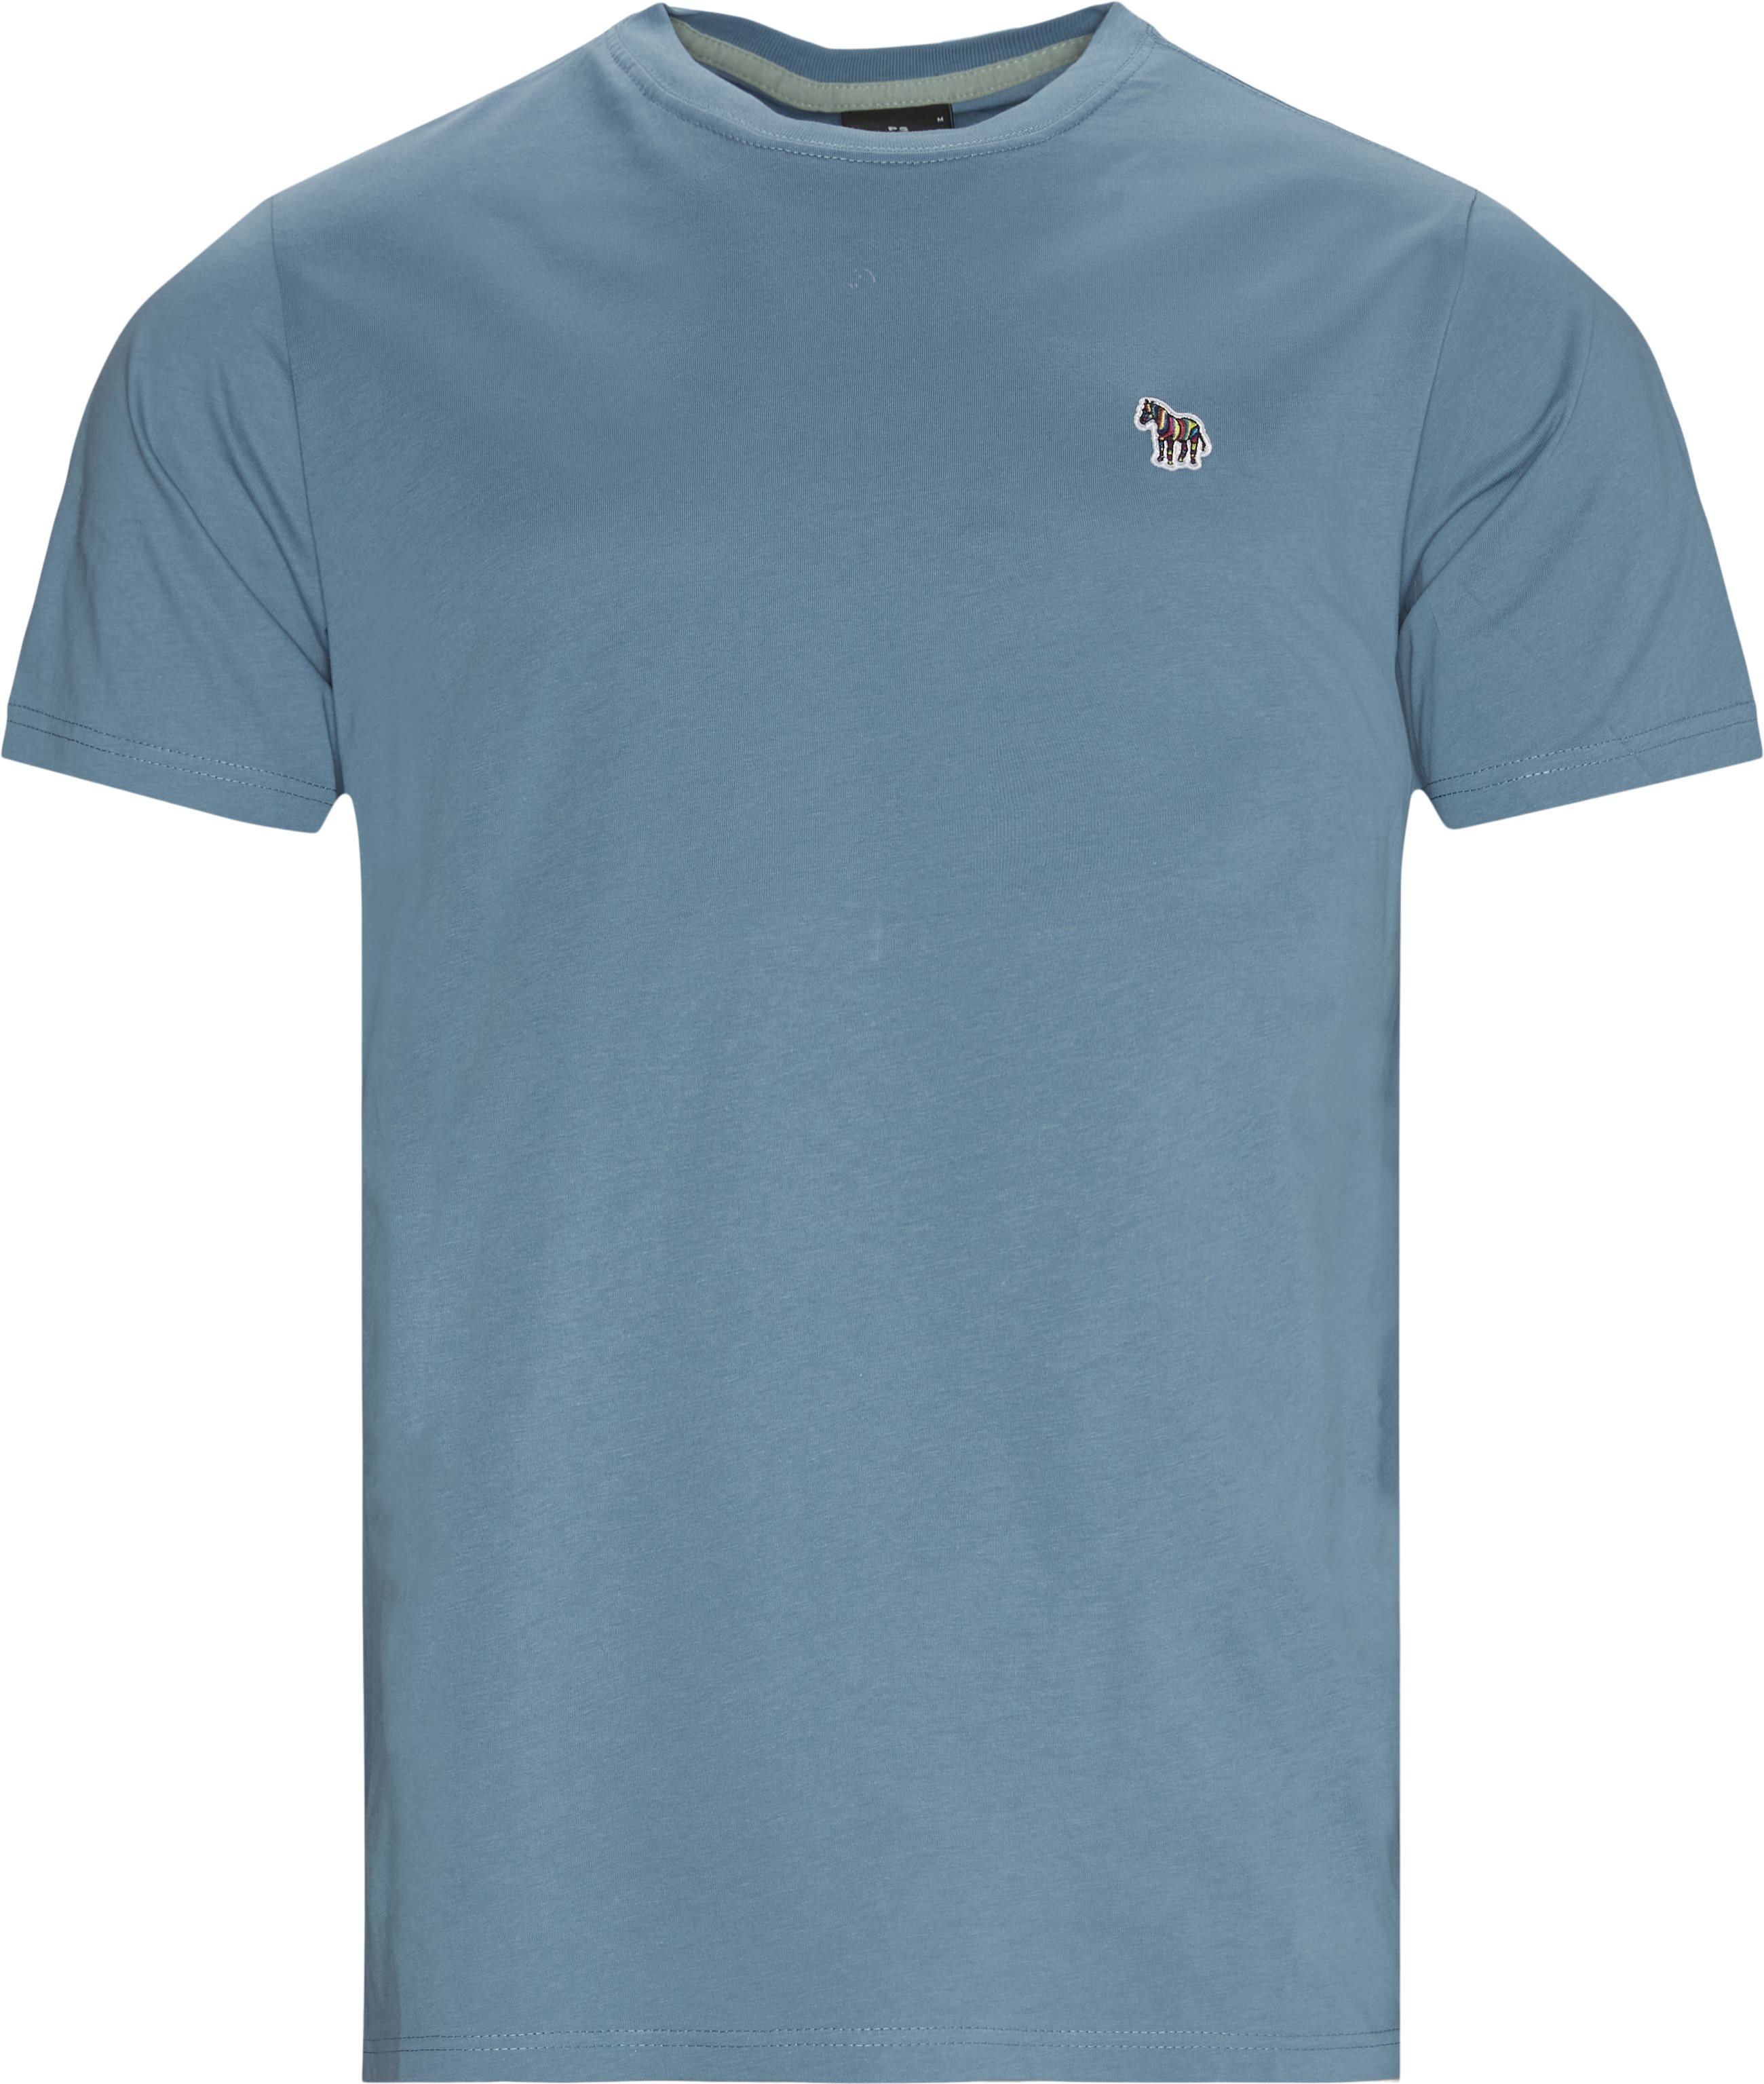 Zebra Tee - T-shirts - Regular fit - Blå